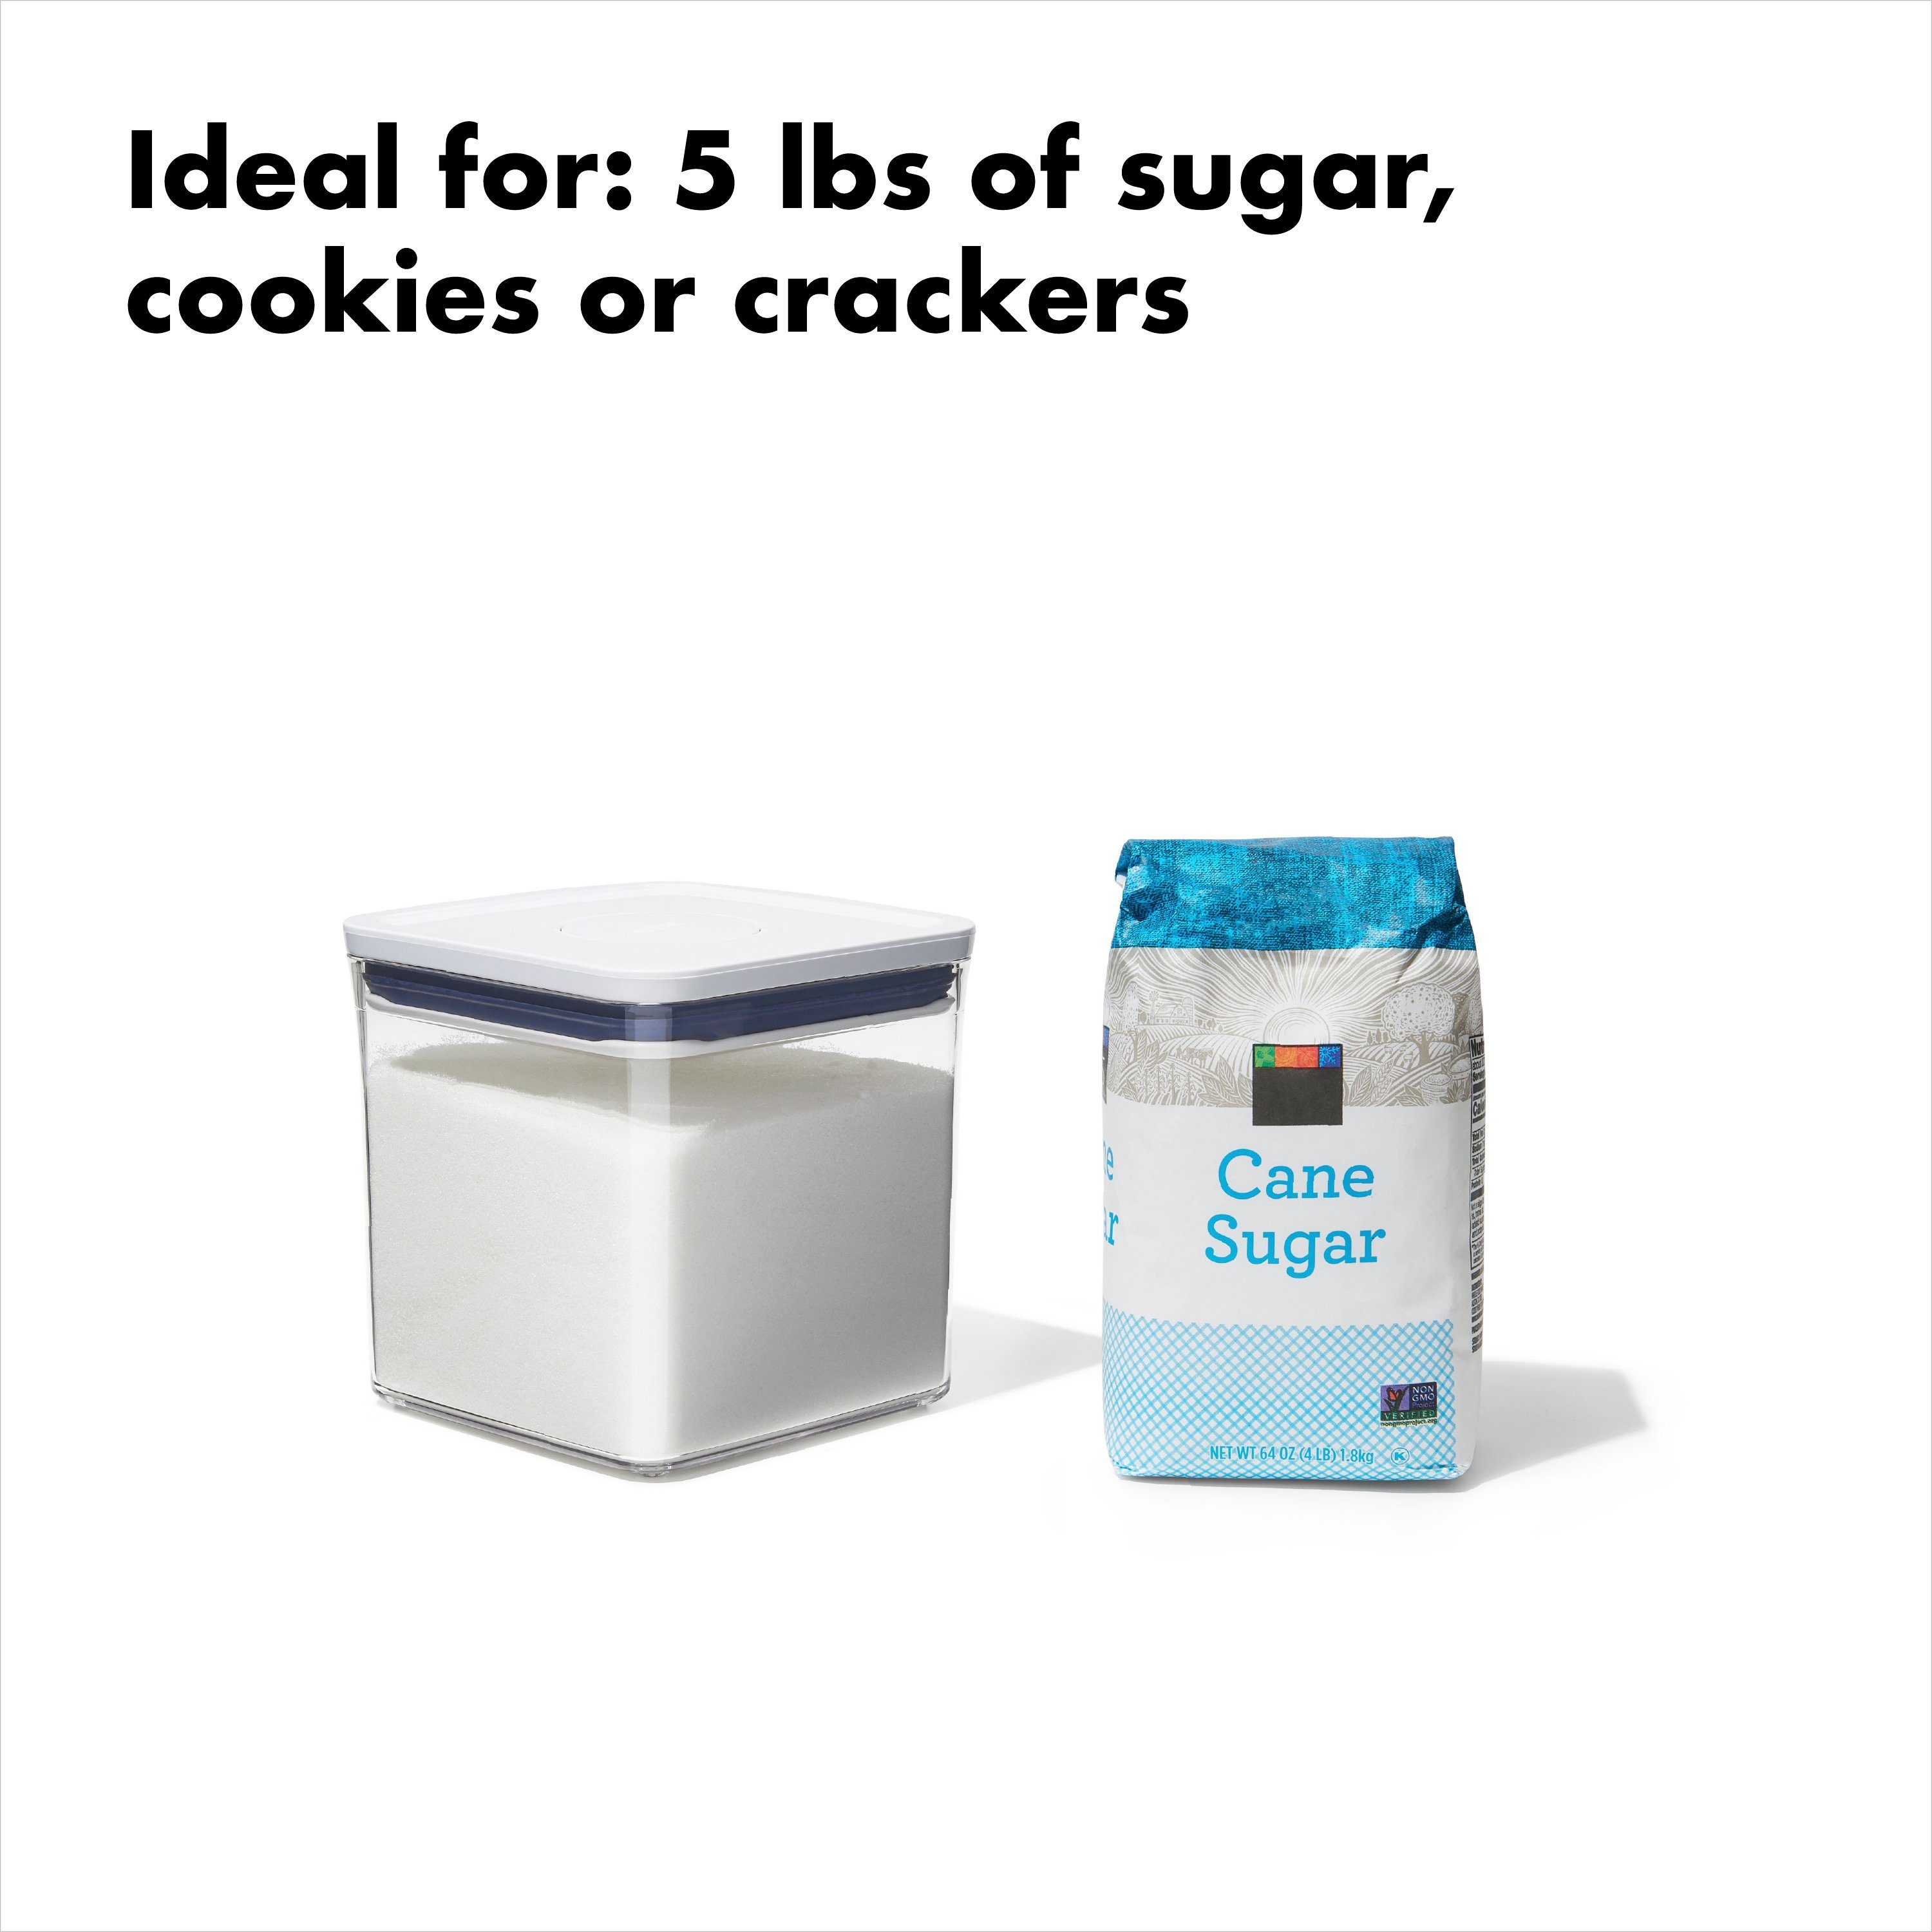 mit und Good luftdichte, POP-Behälter Deckel Lebensmittel – Zucker Grips für Vorratsdose stapelbare – Aufbewahrungsbox für Good mehr 2,6 l Grips OXO OXO